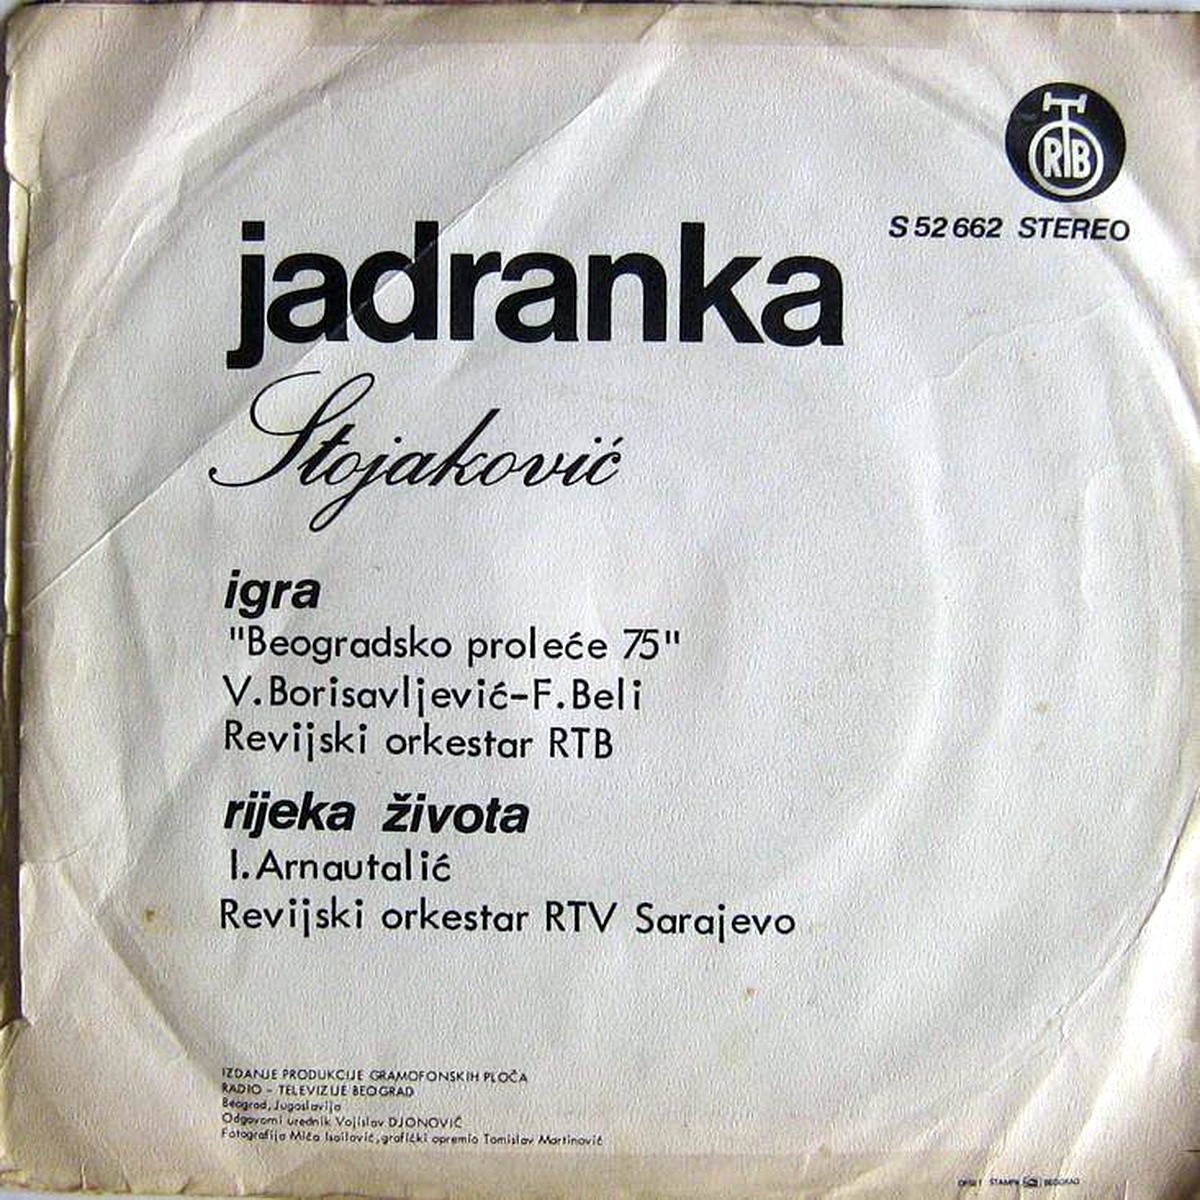 Jadranka Stojakovic 1975 Igra b